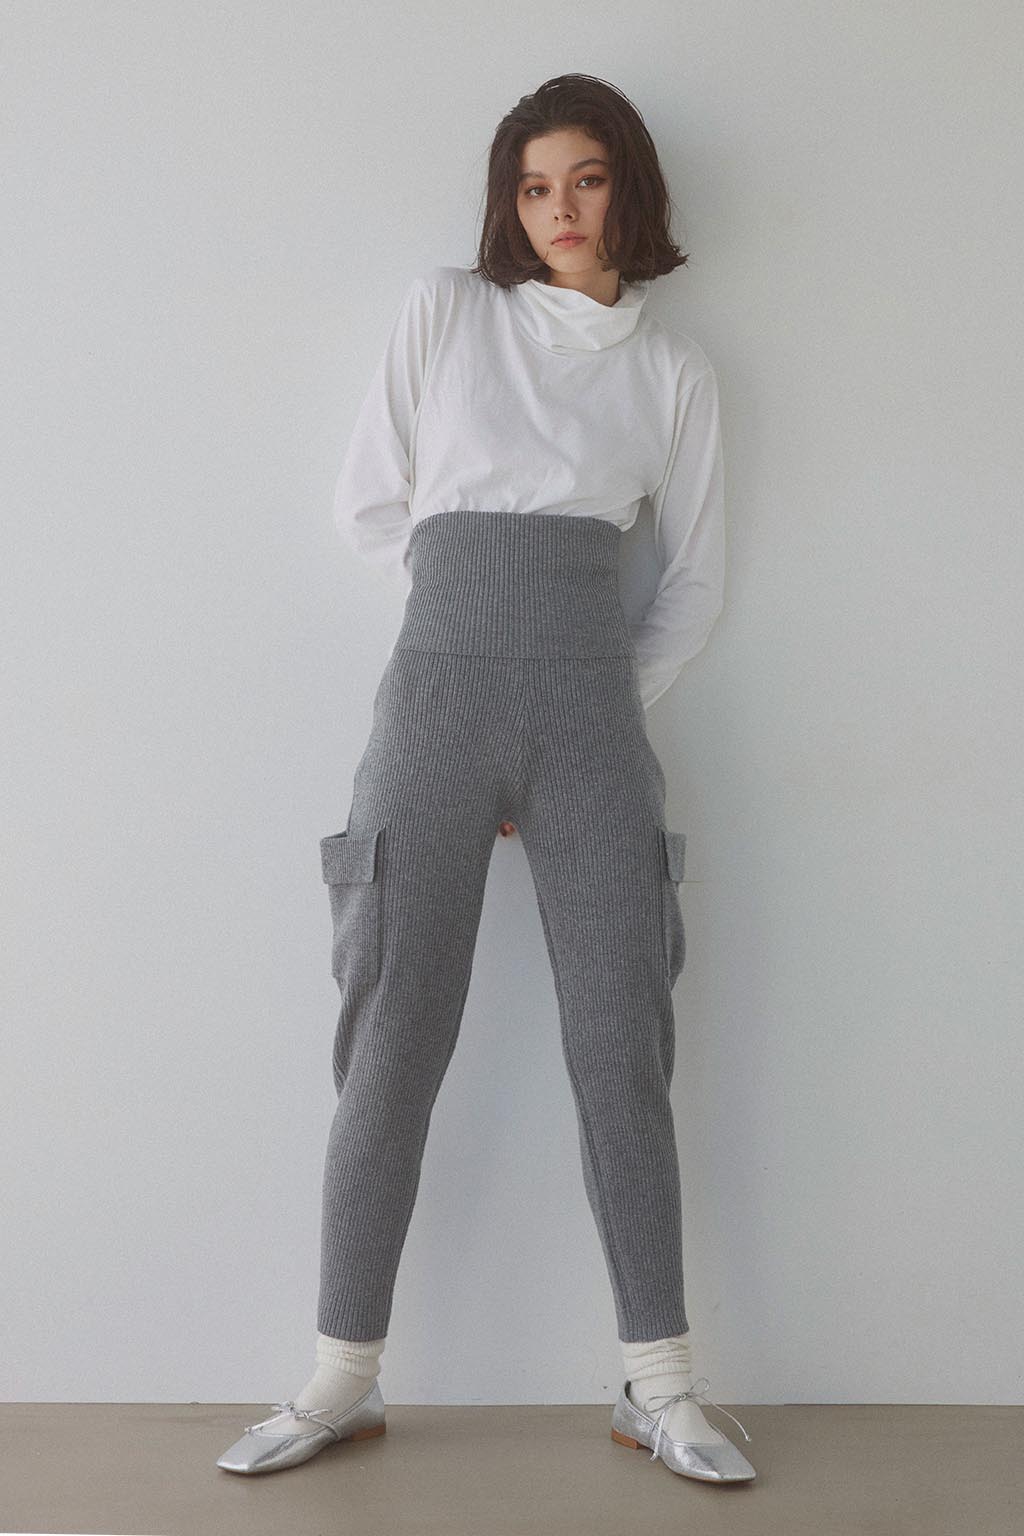 季節感冬Side Pocket Two-Way Knit Pants ニットパンツ